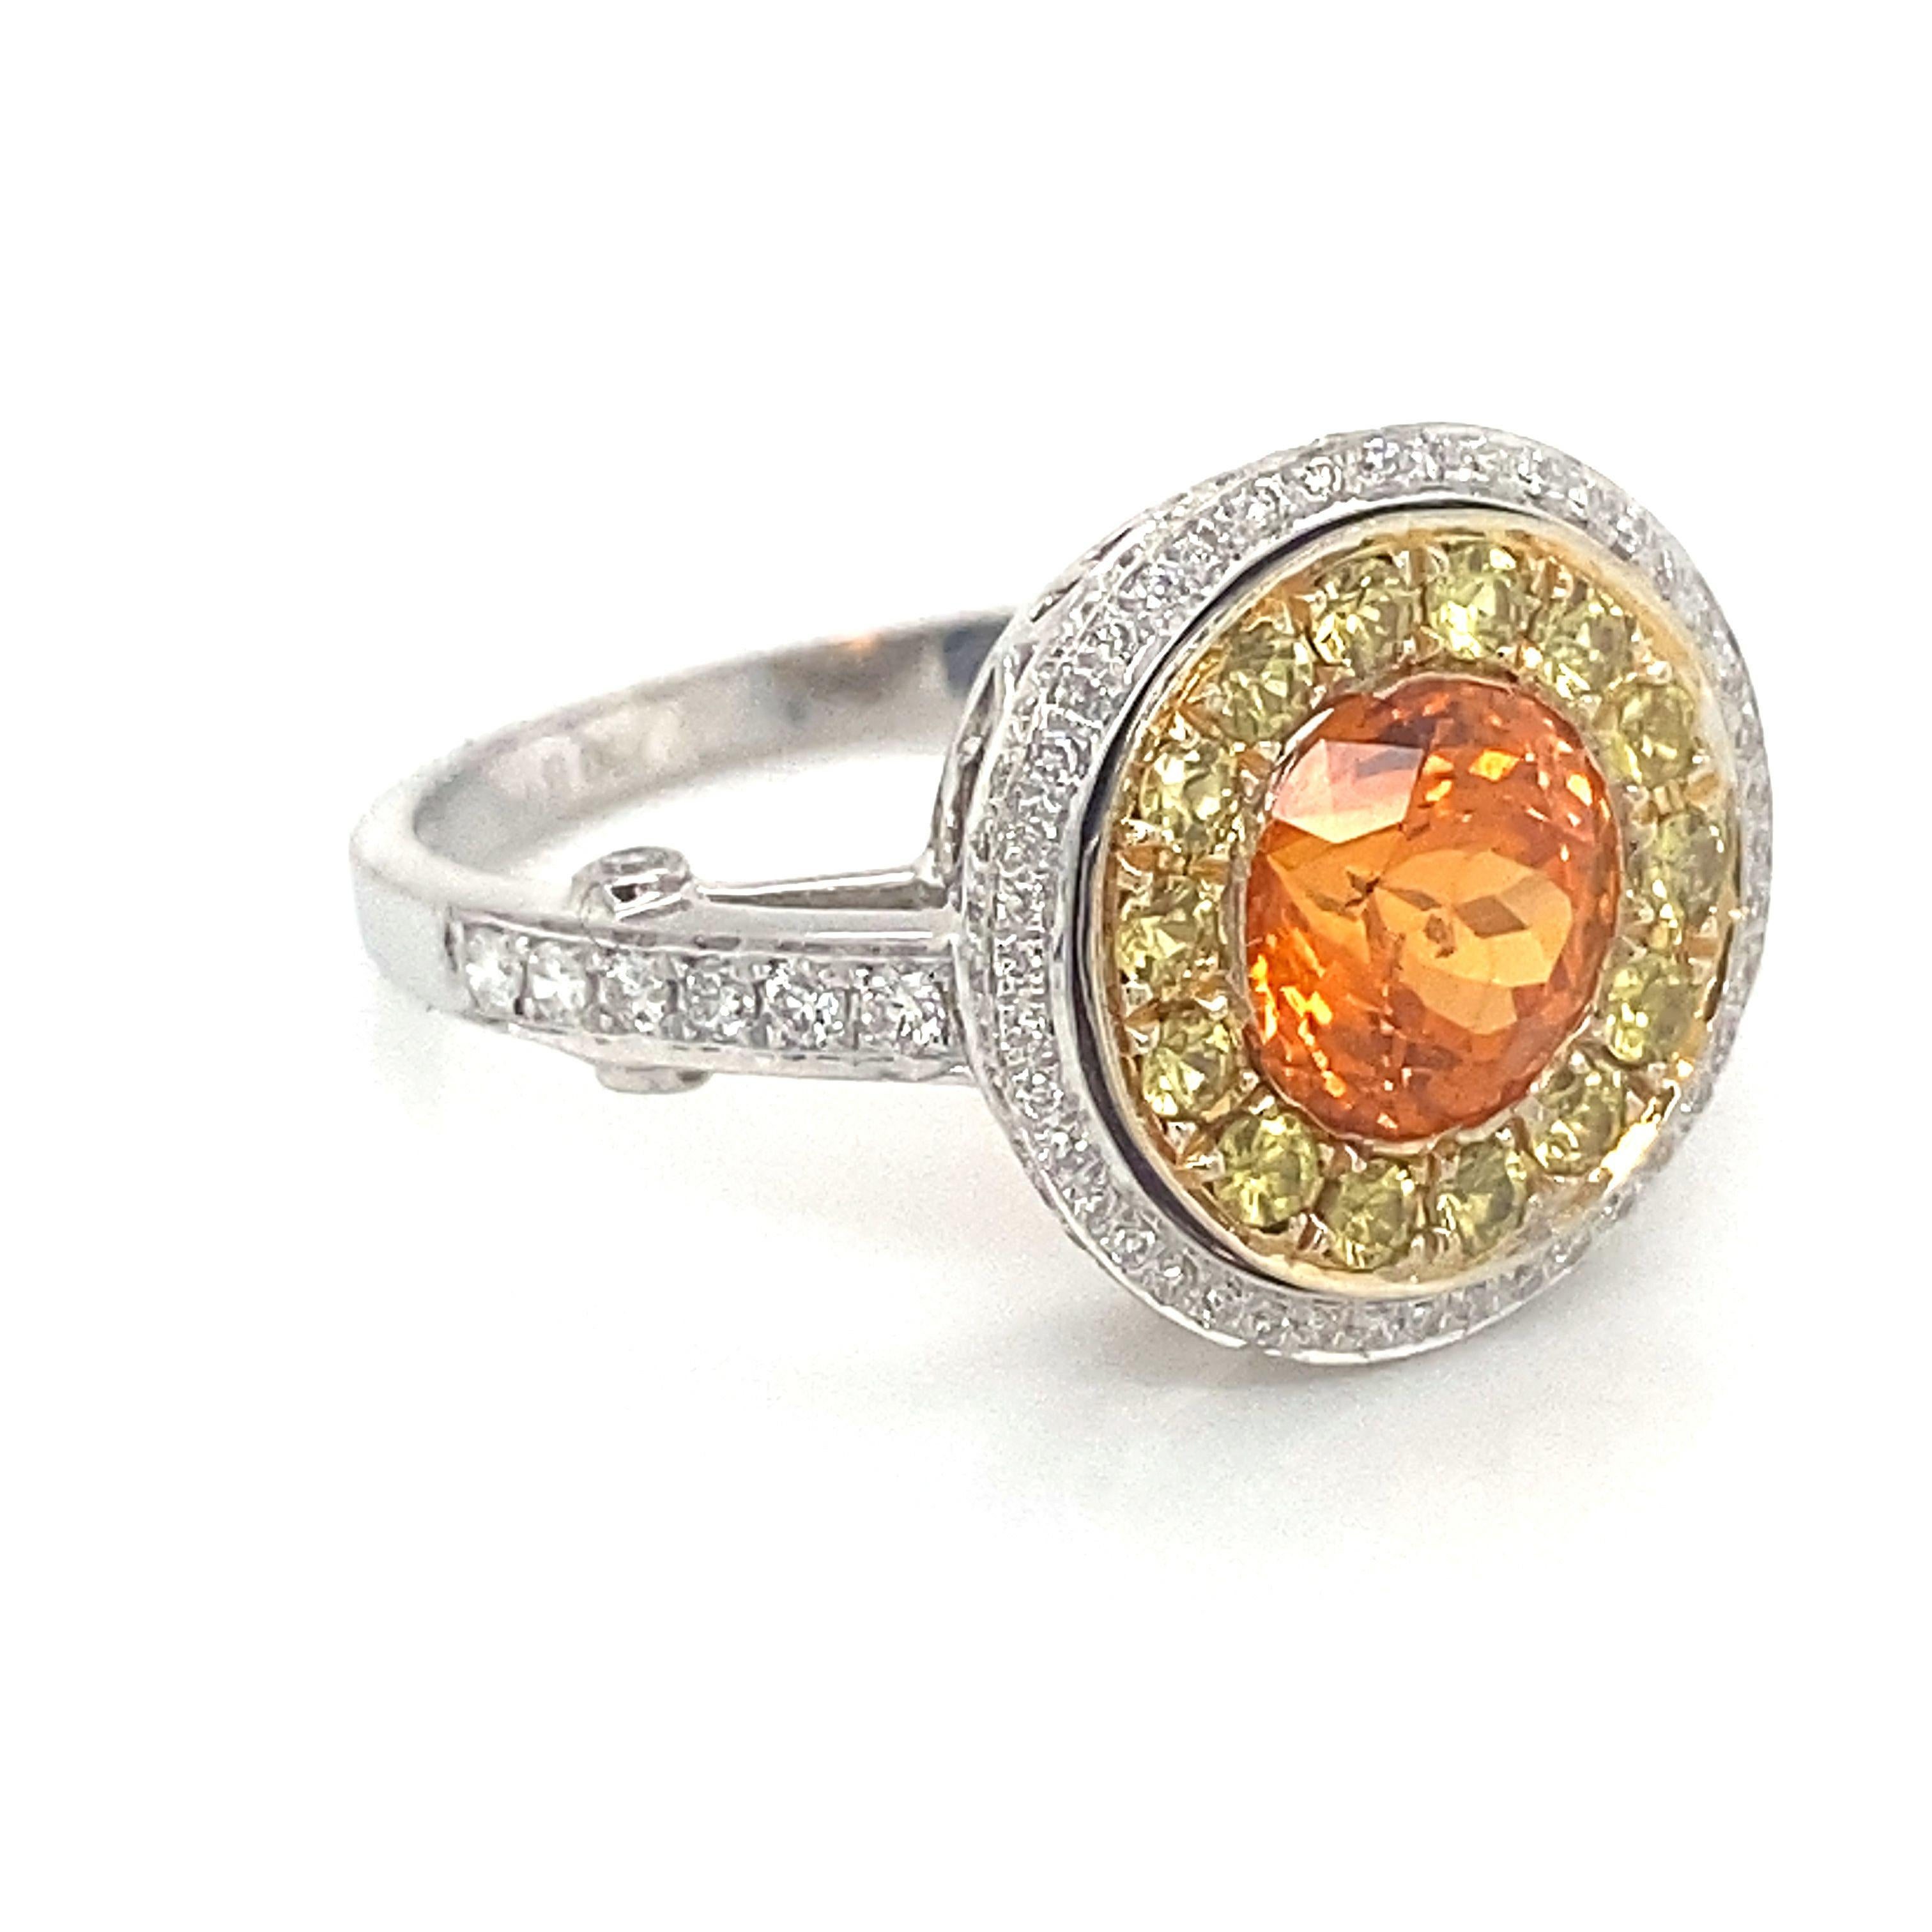 Ein auffallend leuchtender orangefarbener Spessartin-Granat, eingefasst in gelbe und weiße Diamanten in einem Ring aus 18 Karat Weißgold, Größe 7,25 (beträchtlich). Der Granat wiegt 1,91 ct und die gelben Diamanten sind etwa 0,32 ctw (in der Fassung